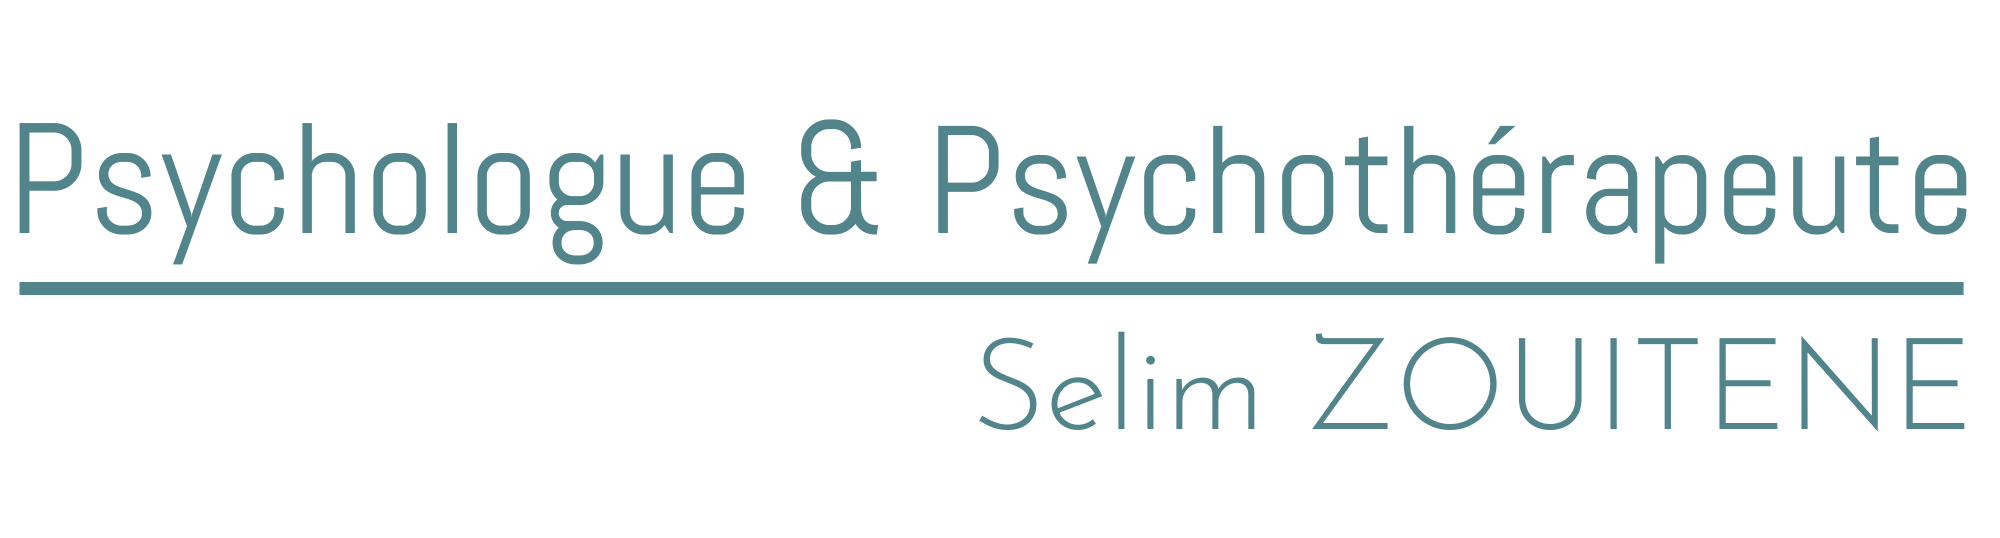 Psychologue & Psychothérapeute - Selim ZOUITENE